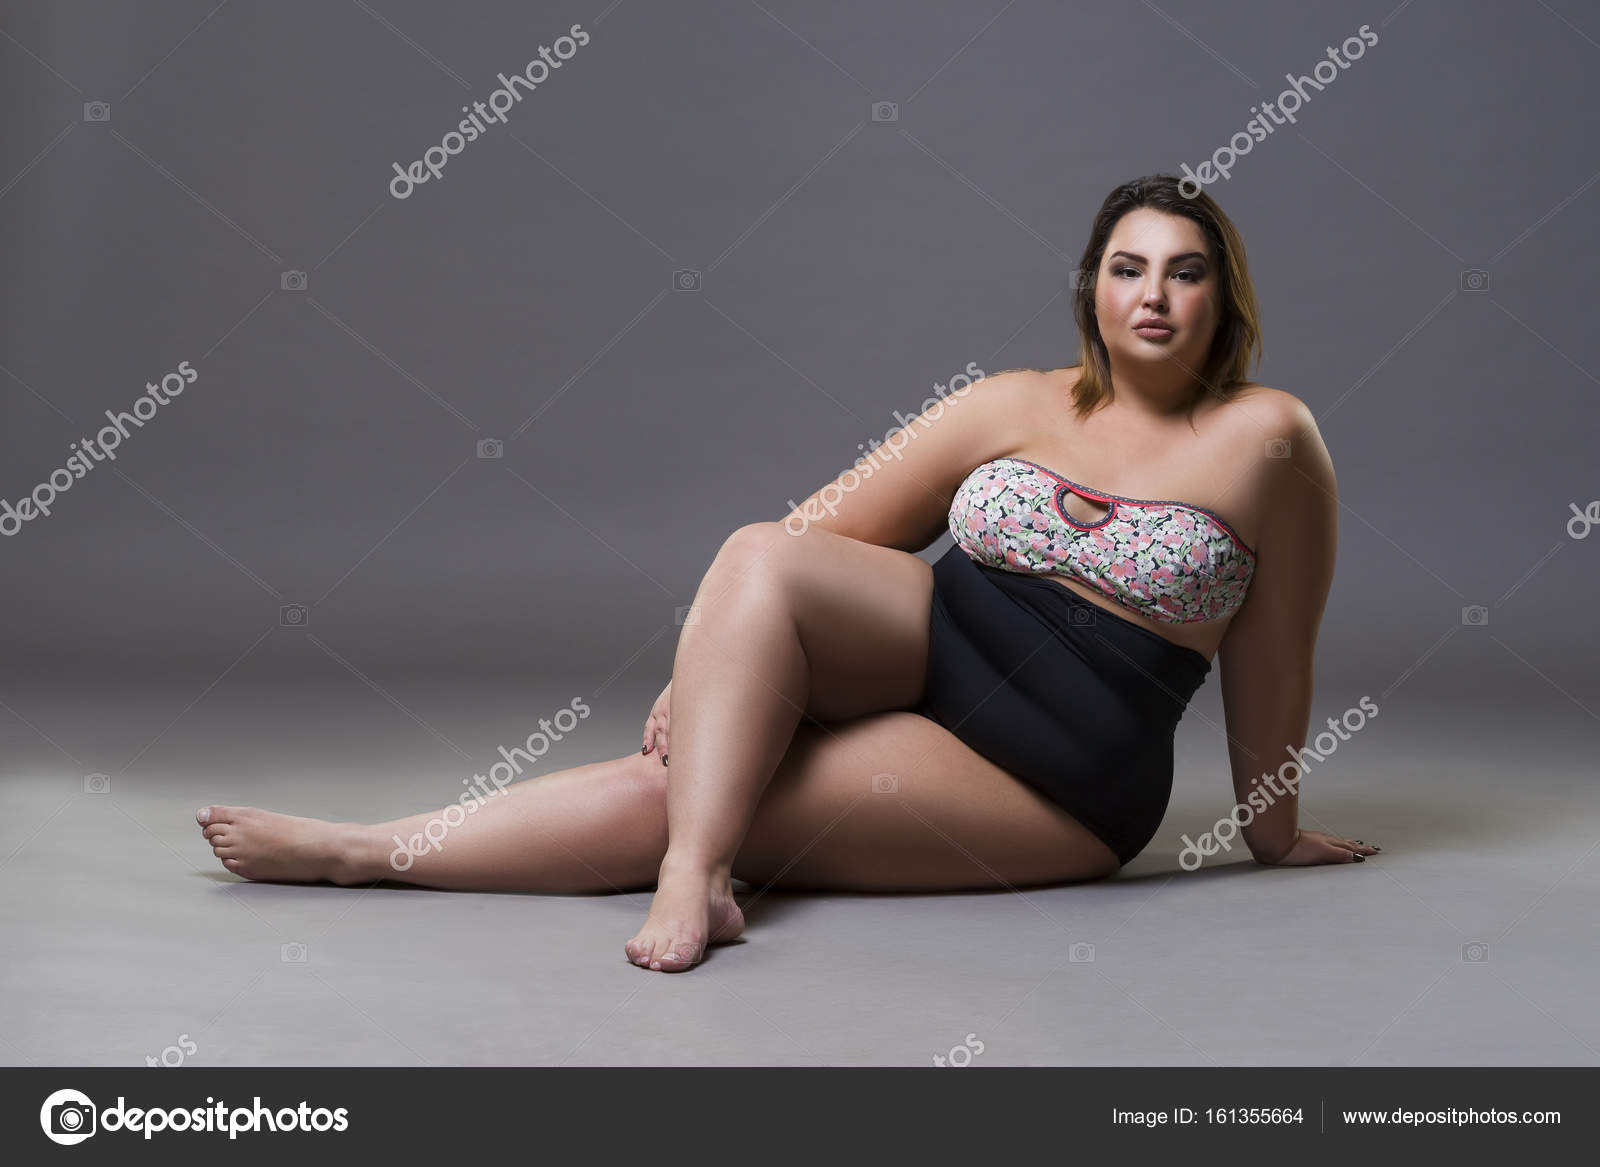 Plus Size Sexy Model In Underwear, Fat Woman On Gray Studio